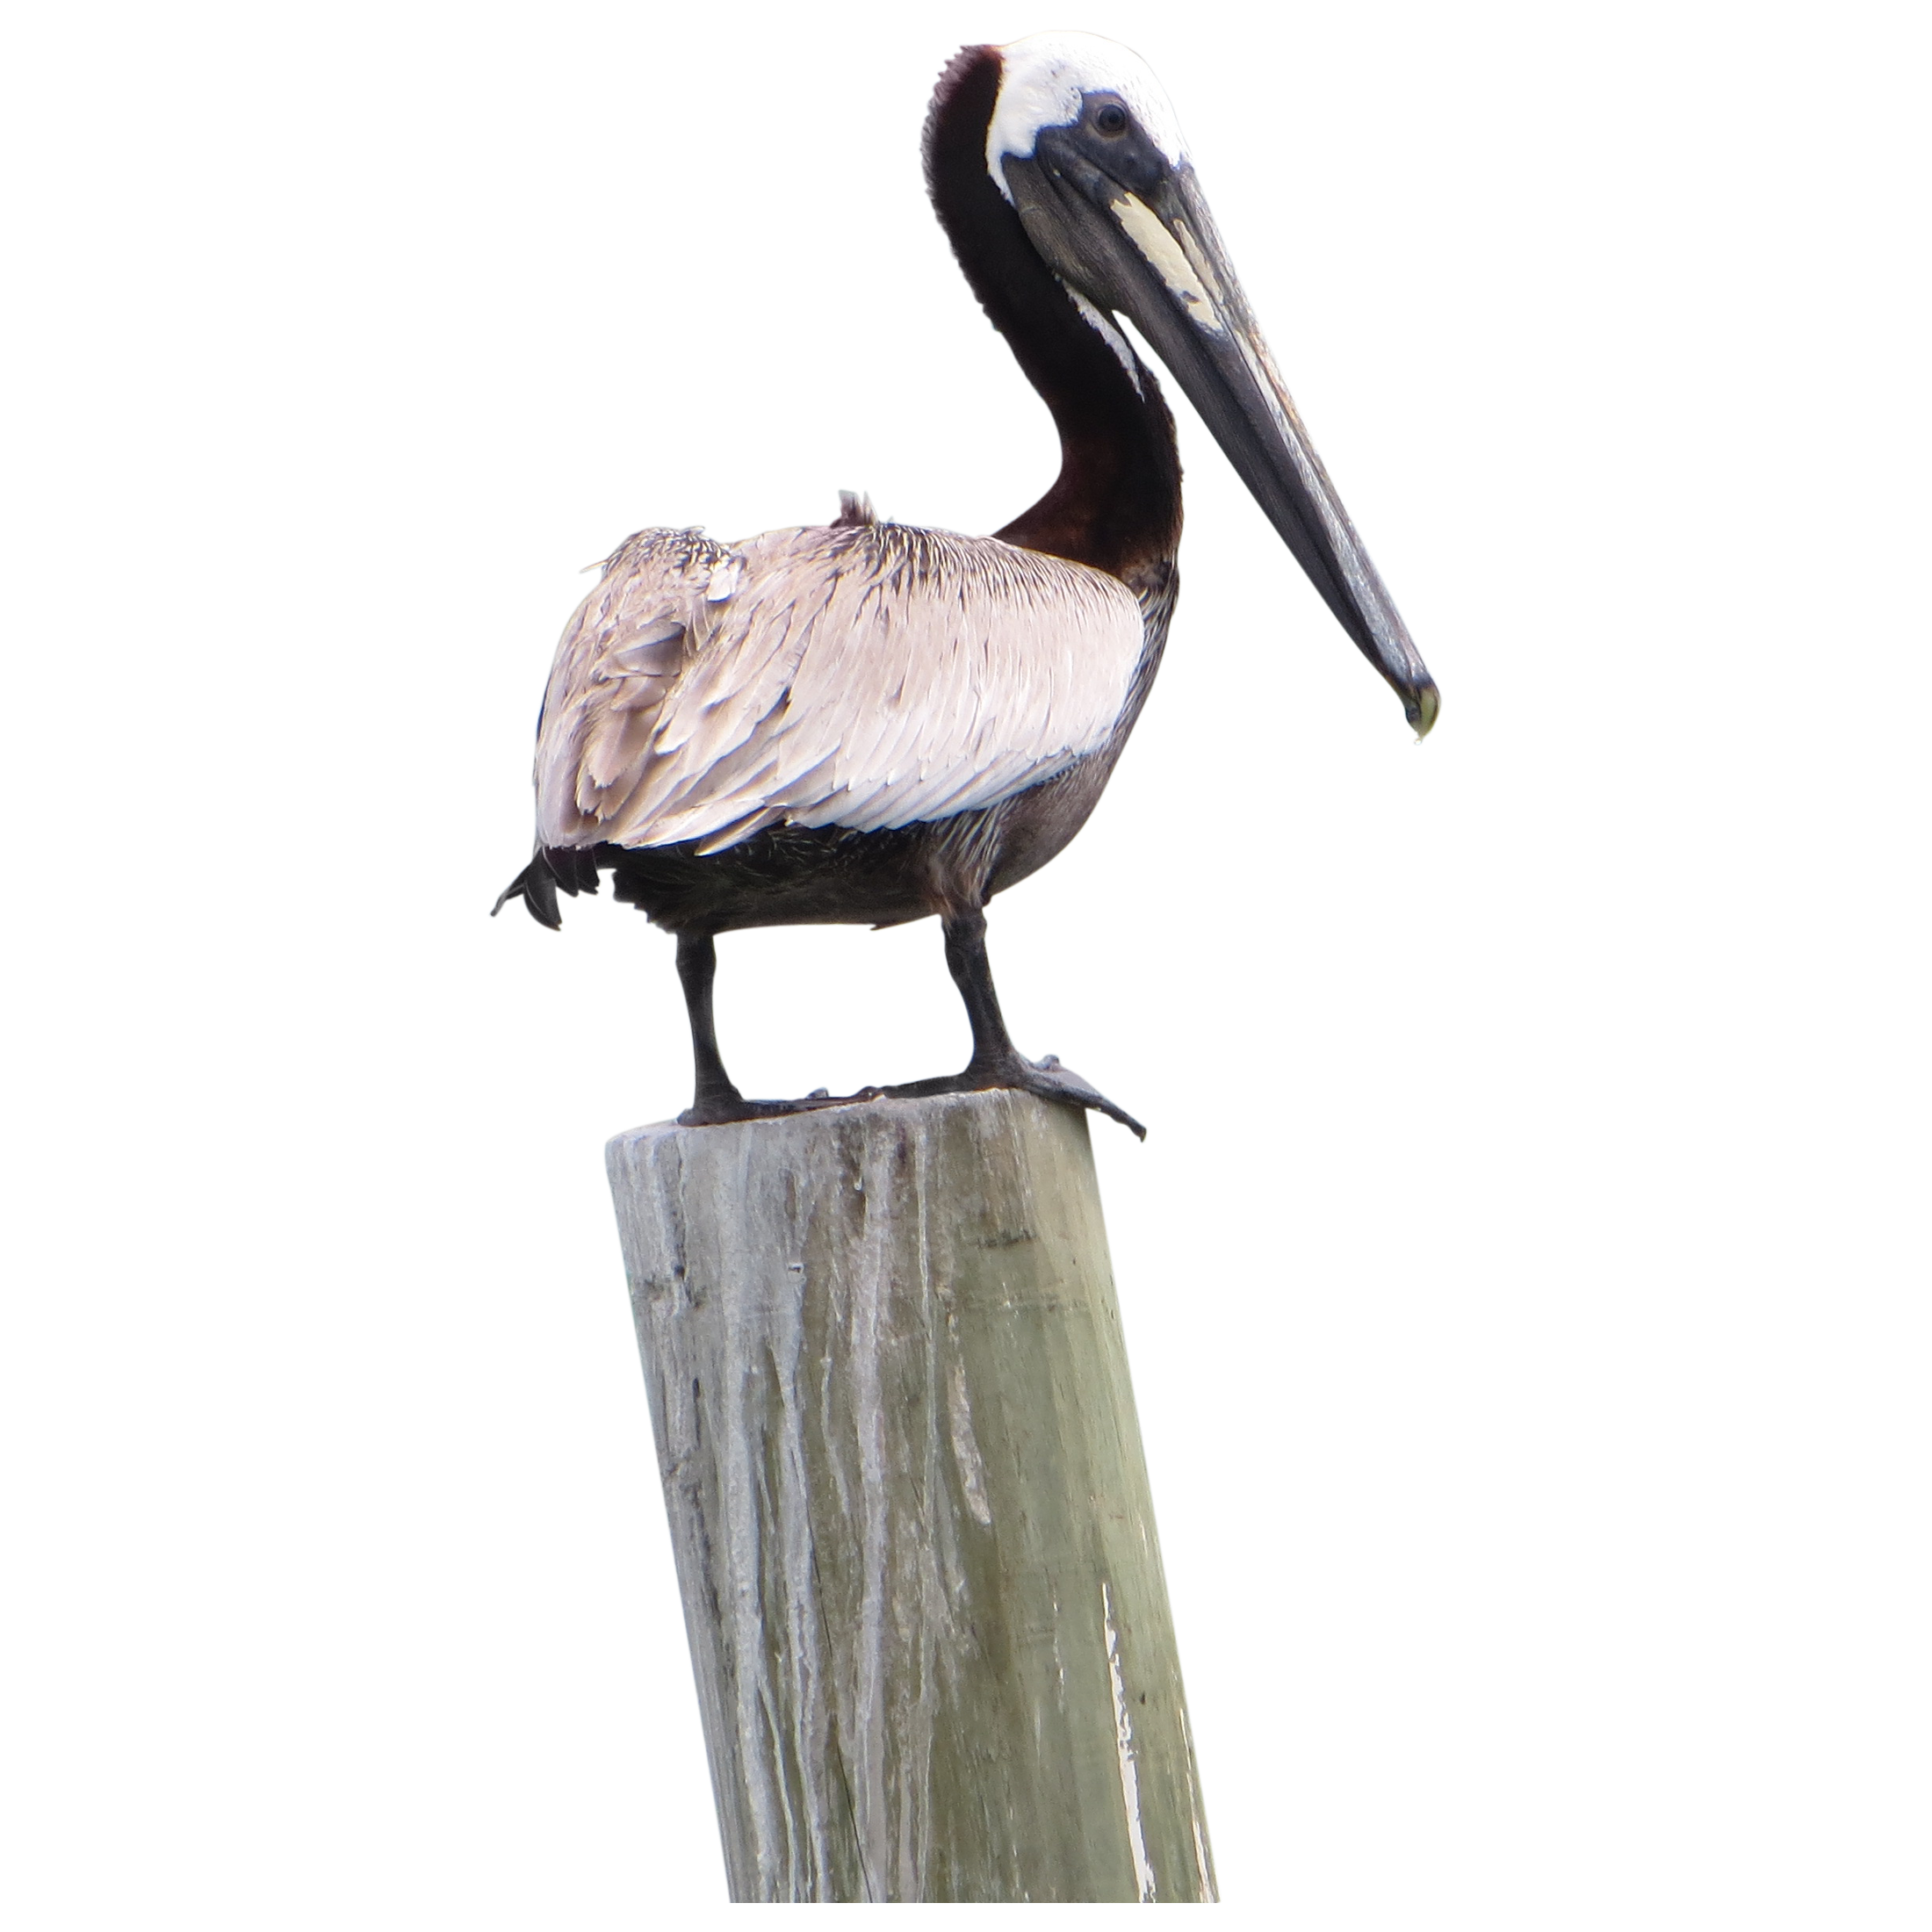 A confident pelican looking b